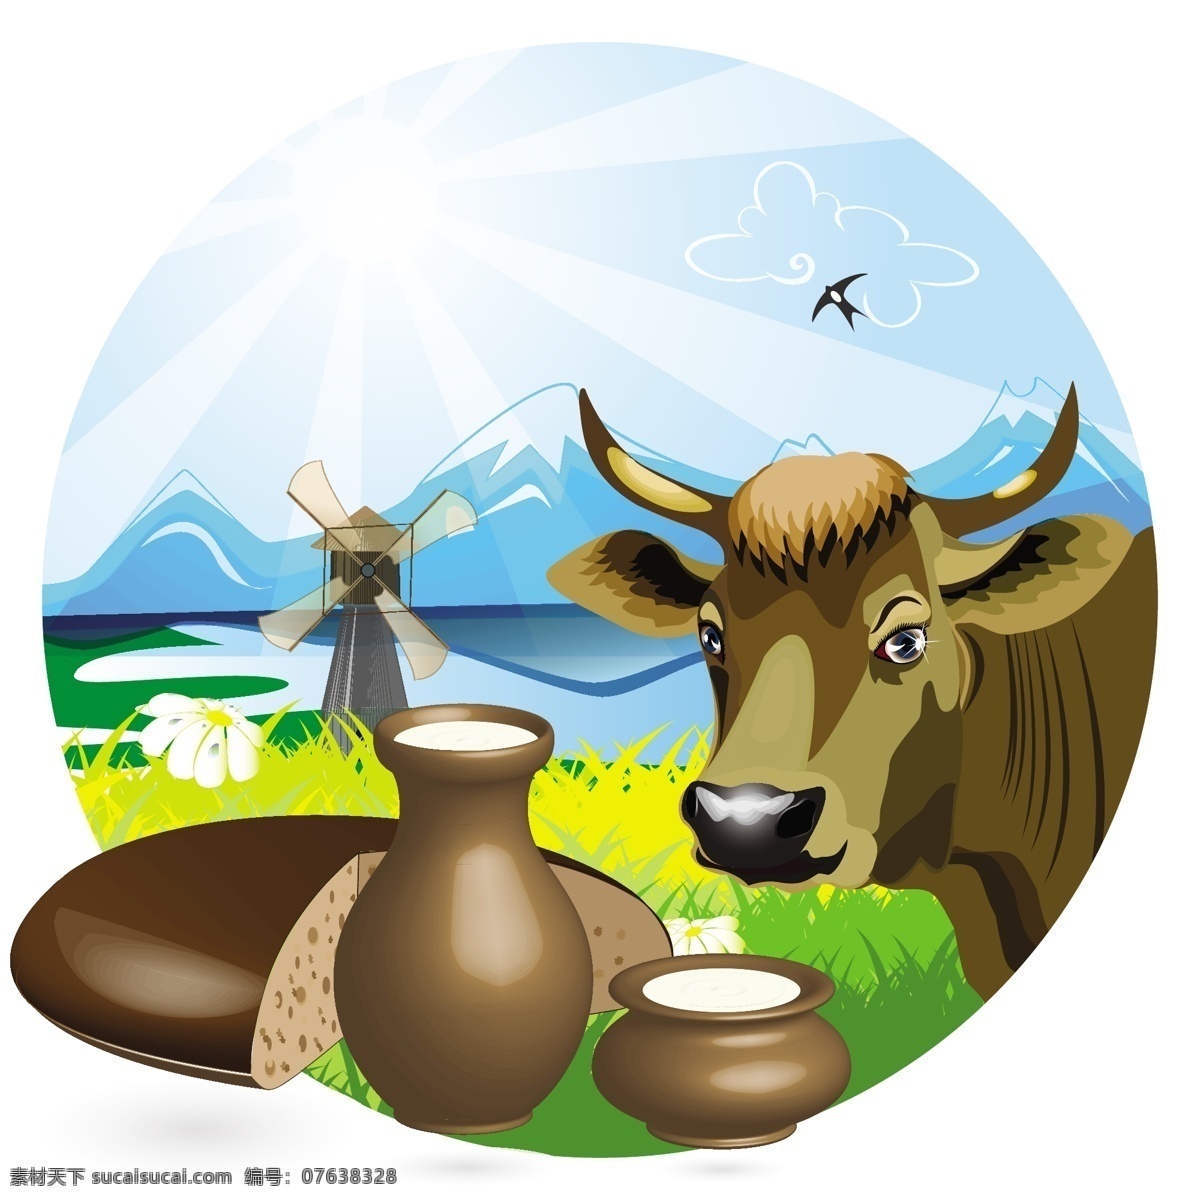 牛奶 主题 矢量 风车 健康 面包 牛头 小麦 雪山 燕子 郊区 矢量图 日常生活